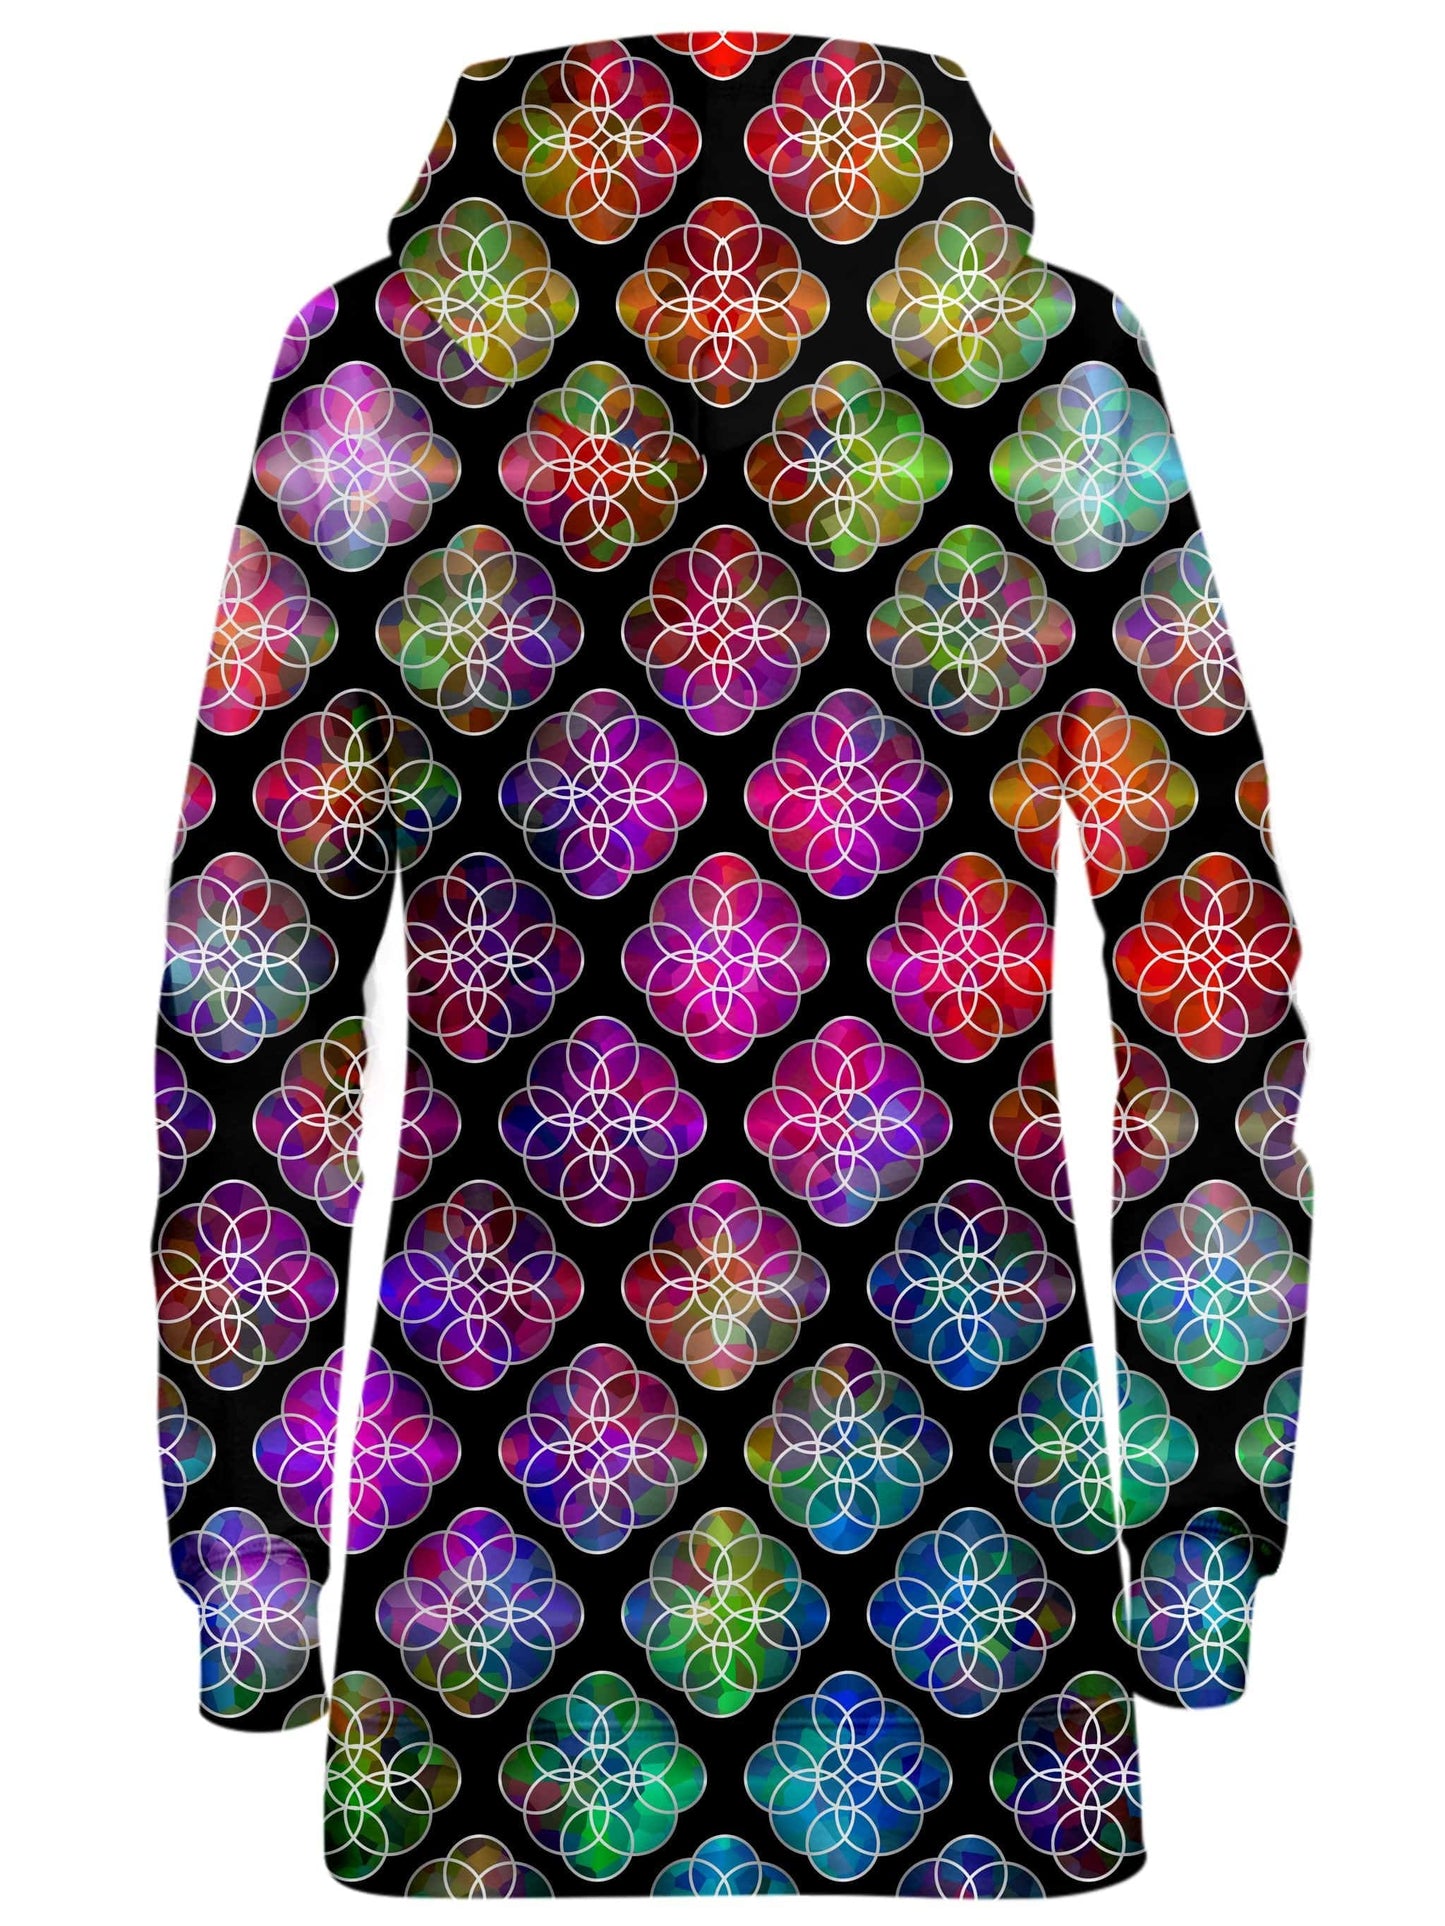 Rings of Color Pattern Hoodie Dress, Sartoris Art, | iEDM